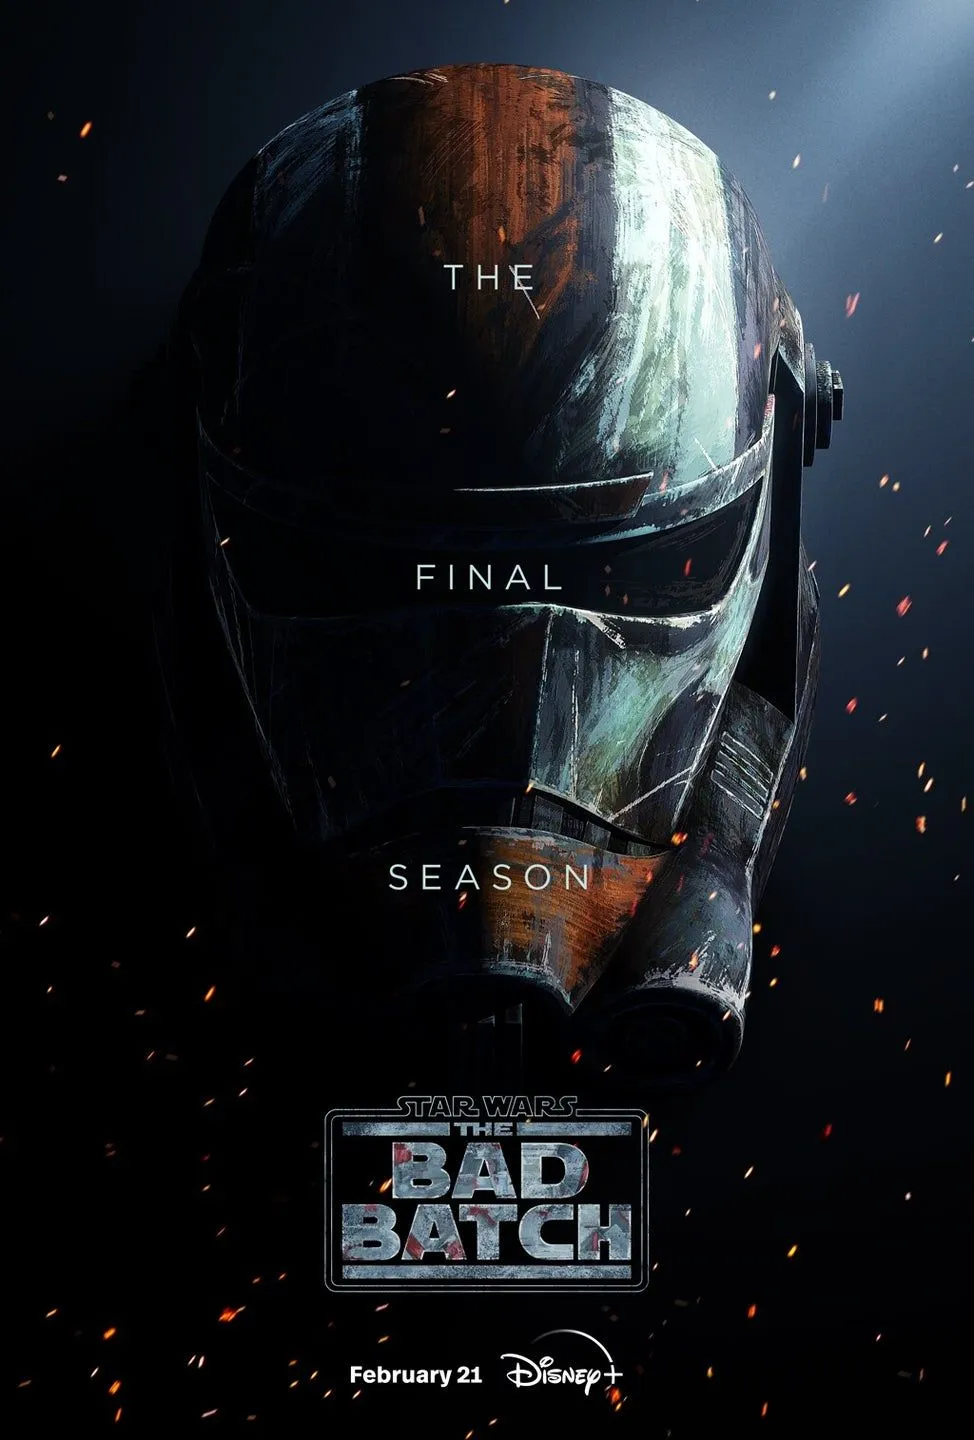 Mehr über den Artikel erfahren Der Trailer zu ‚Star Wars: The Bad Batch‘ Staffel 3 signalisiert das Ende einer spannenden Serie